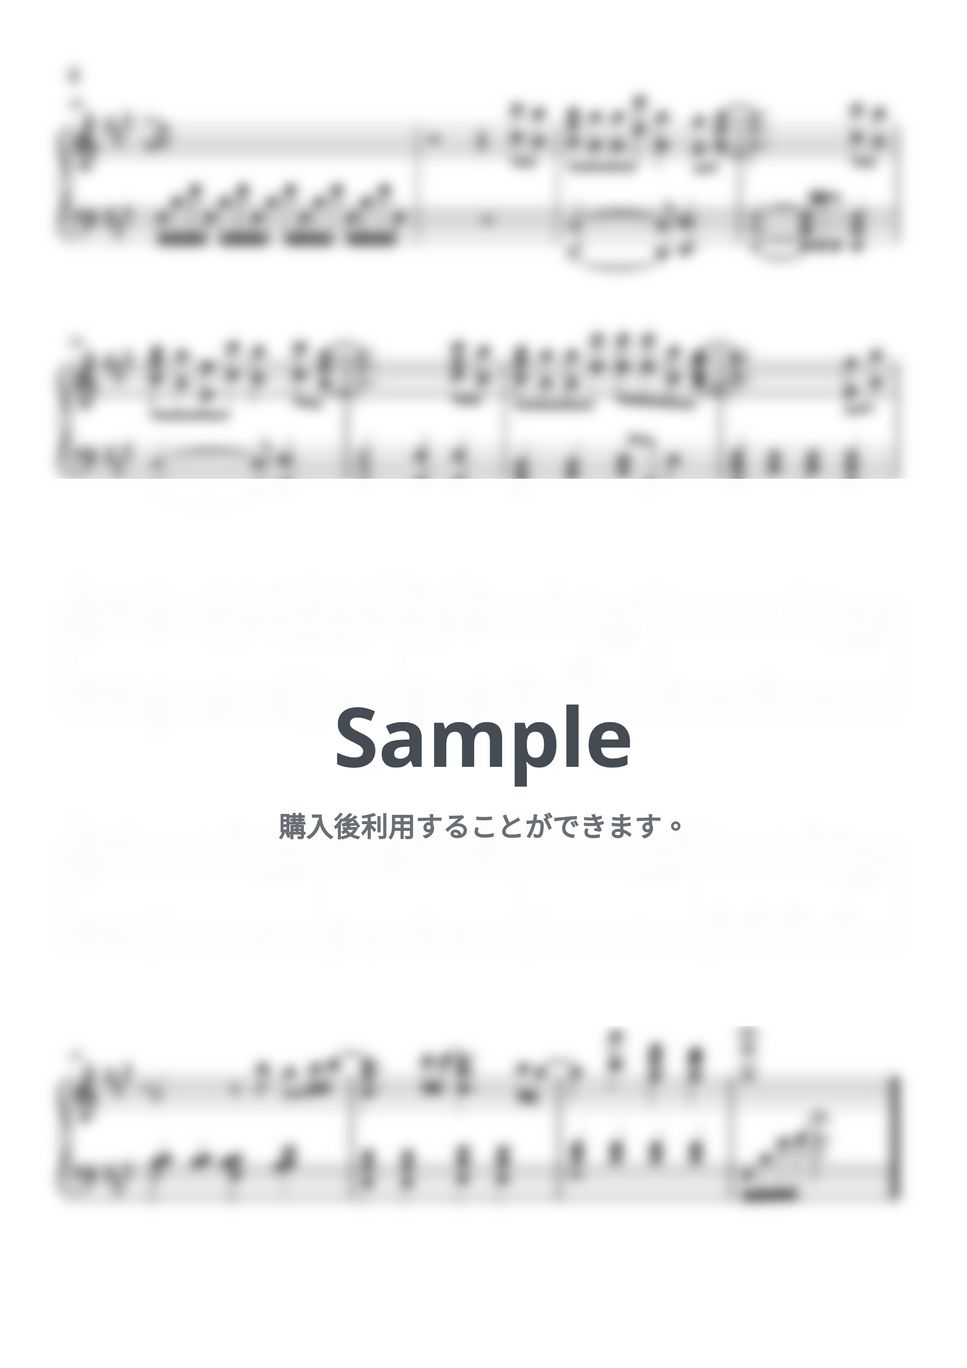 澤野弘之 - Call of Silence (進撃の巨人 / ピアノ楽譜 / 初級) by Piano Lovers. jp